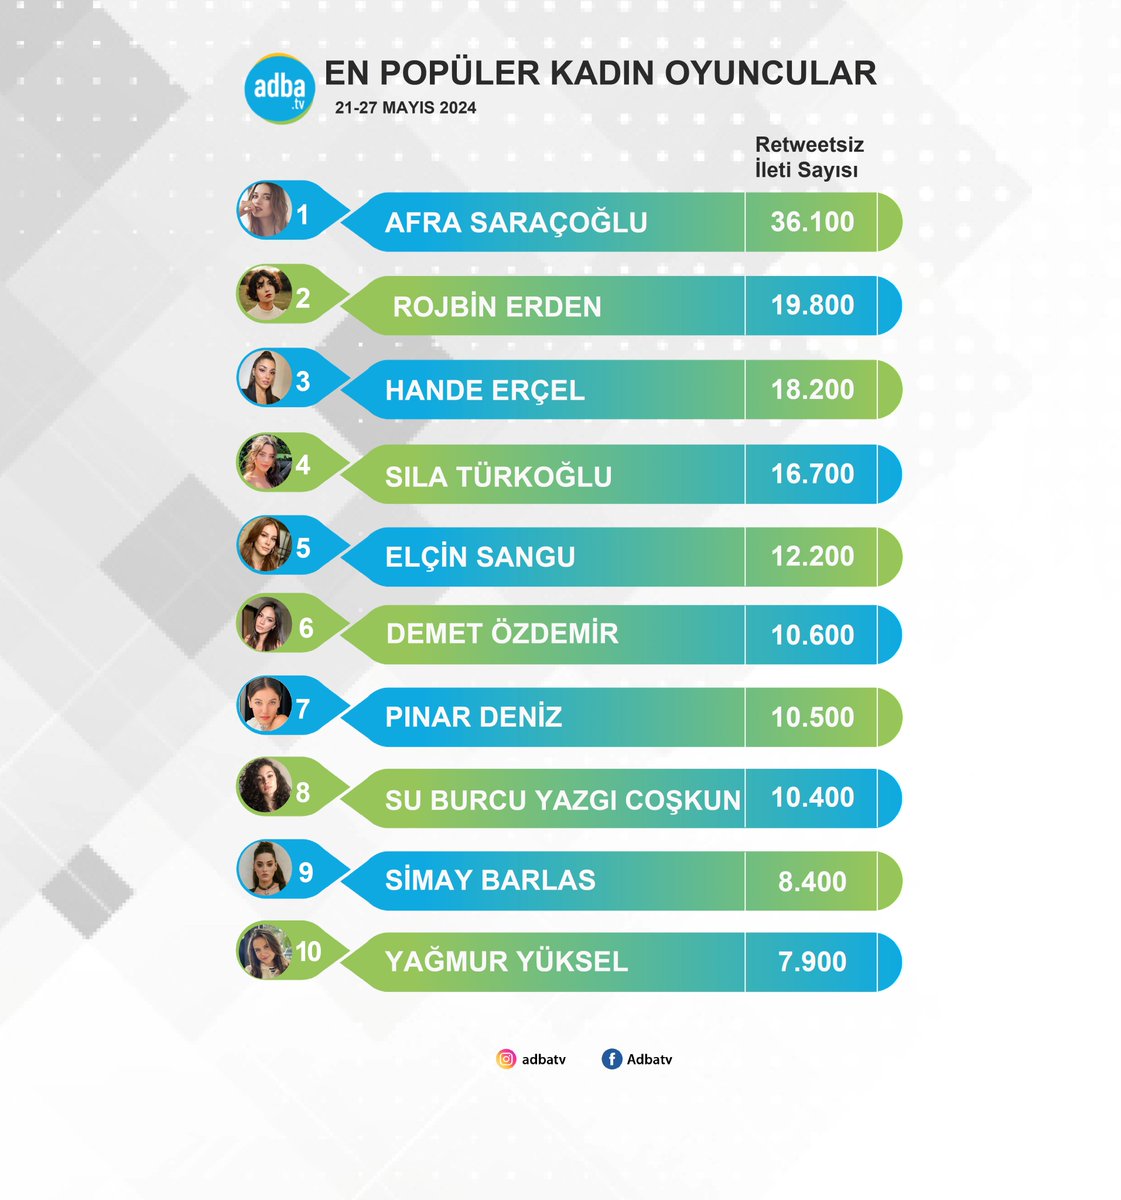 Sosyal medyanın en popüler kadın oyuncuları belli oldu! (21-27 Mayıs) #AfraSaraçoğlu #RojbinErden #HandeErçel #SılaTürkoğlu #ElçinSangu #DemetÖzdemir #PınarDeniz #SuBurcuYazgıCoşkun #SimayBarlas #YağmurYüksel